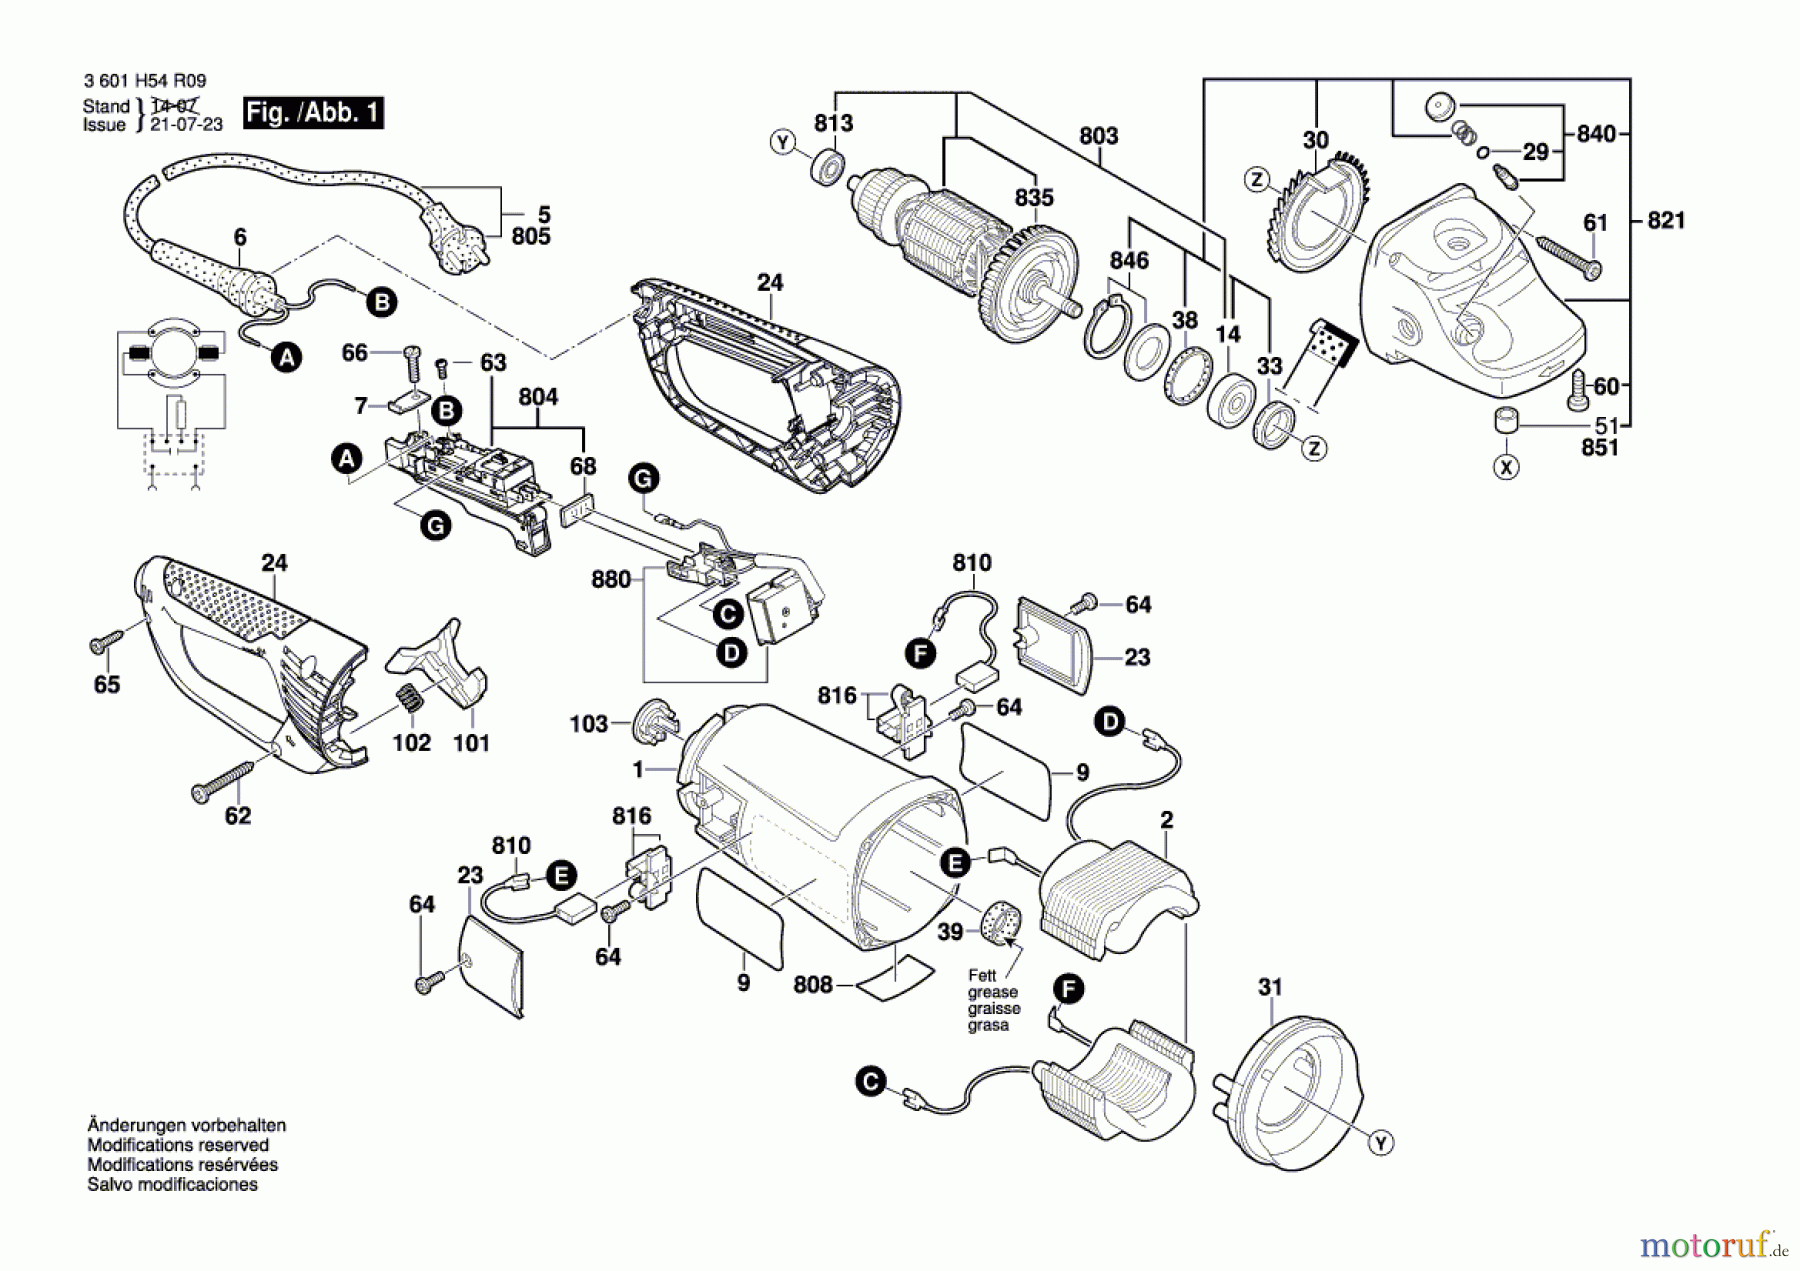  Bosch Werkzeug Winkelschleifer BAG 230-1 CLBF Seite 1